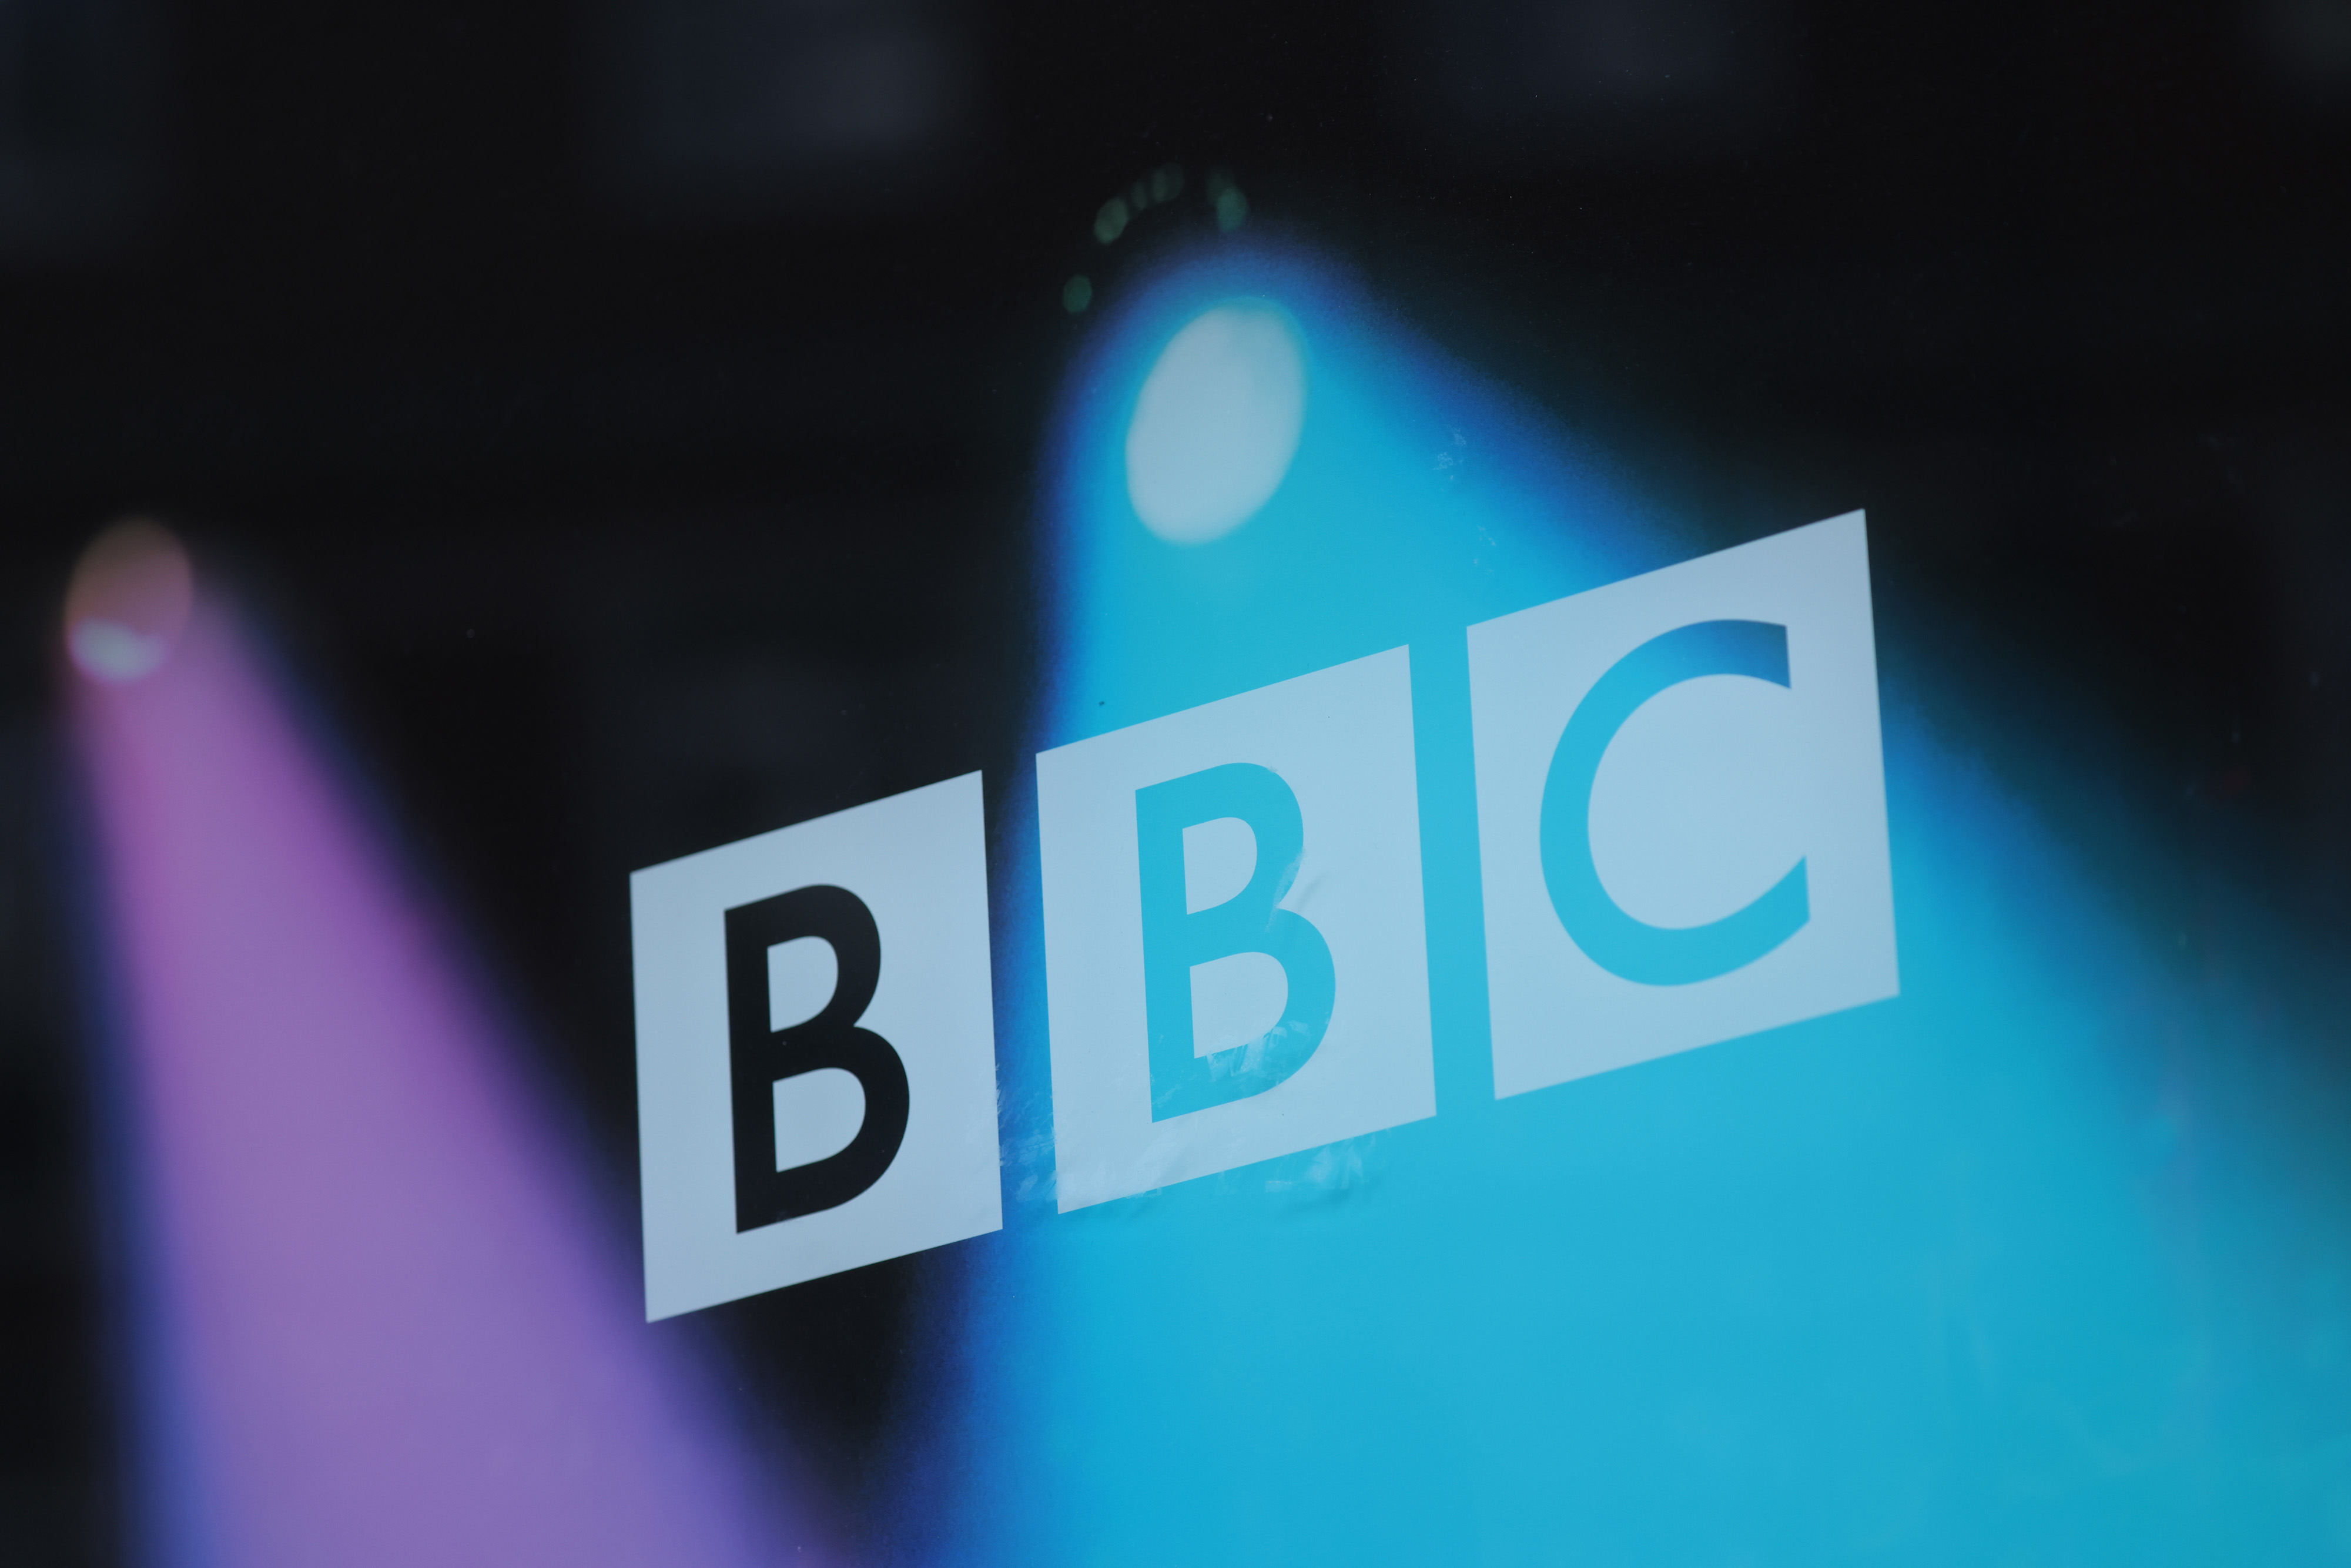 Die BBC veröffentlichte den Casting-Aufruf auf ihrer Website statt auf der Bargain Hunt-Website